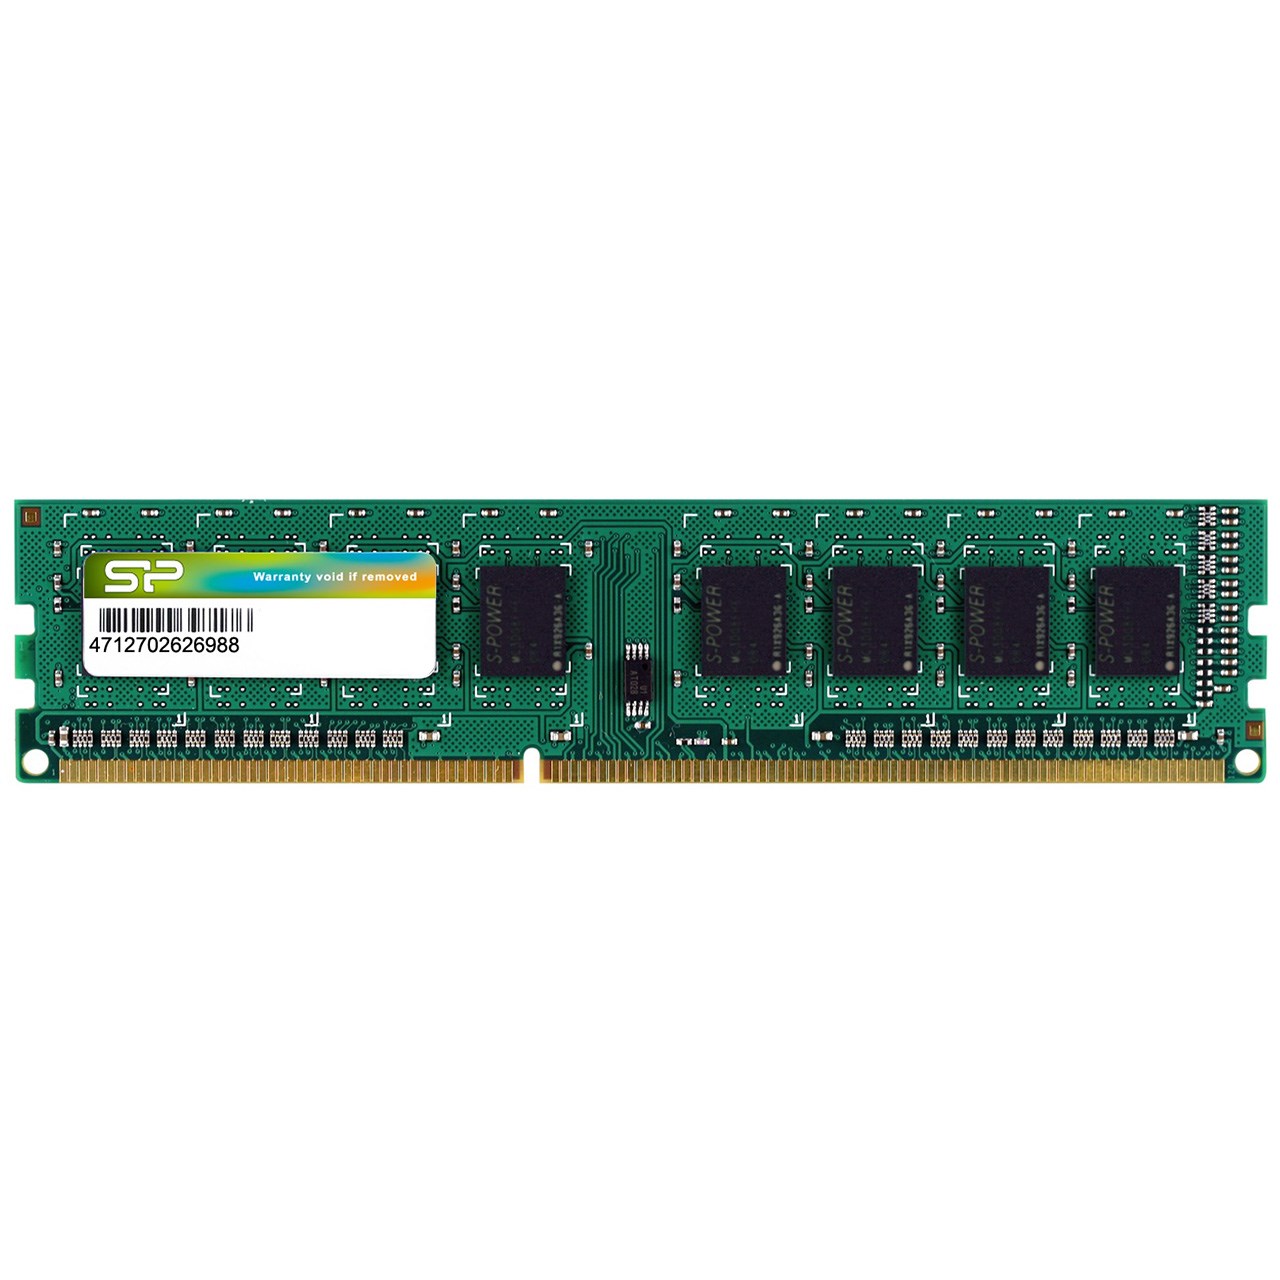 رم دسکتاپ DDR3L تک کاناله 1600 مگاهرتز سیلیکون پاور ظرفیت 8 گیگابایت مدل CL11